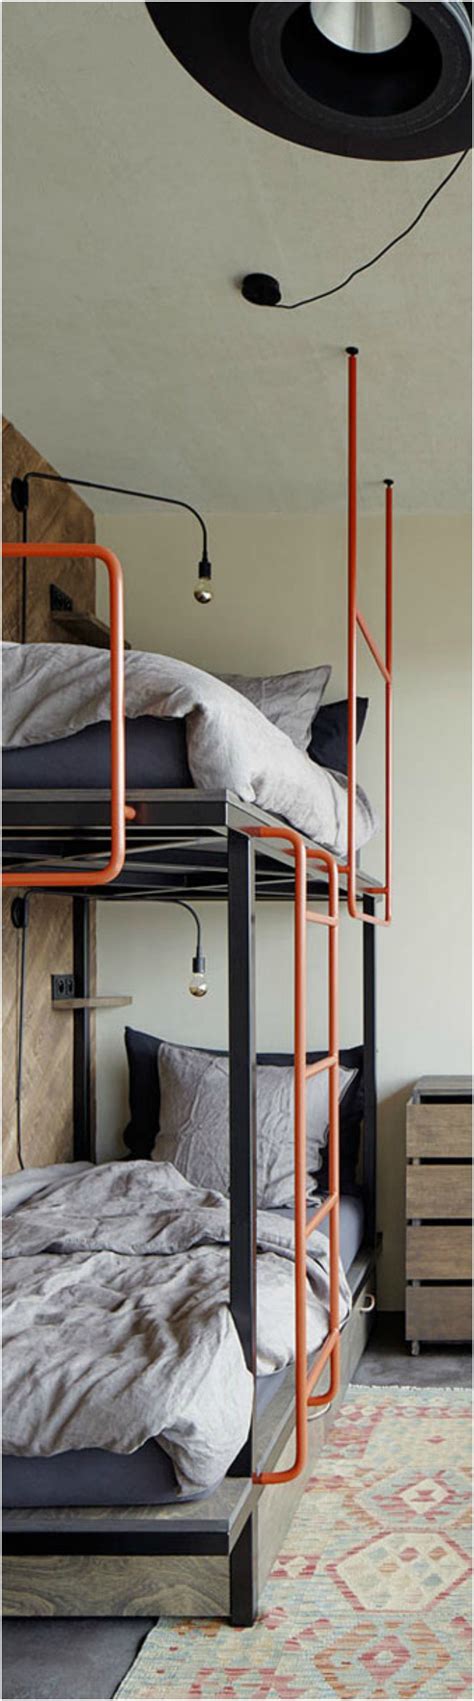 25 Unique Bunk Beds Design Ideas